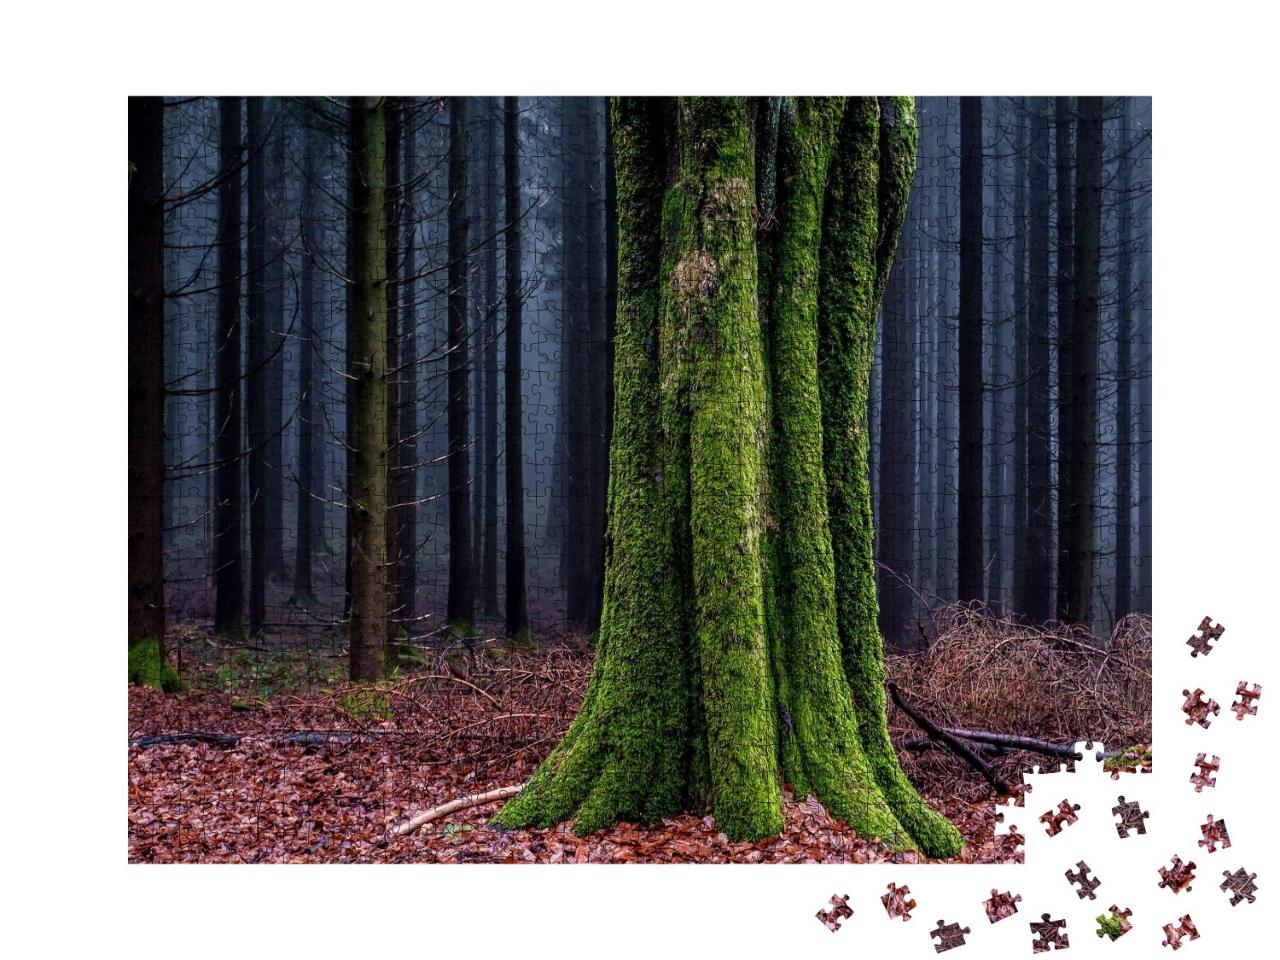 Puzzle de 1000 pièces « Tronc d'arbre couvert de mousse dans une forêt d'automne »